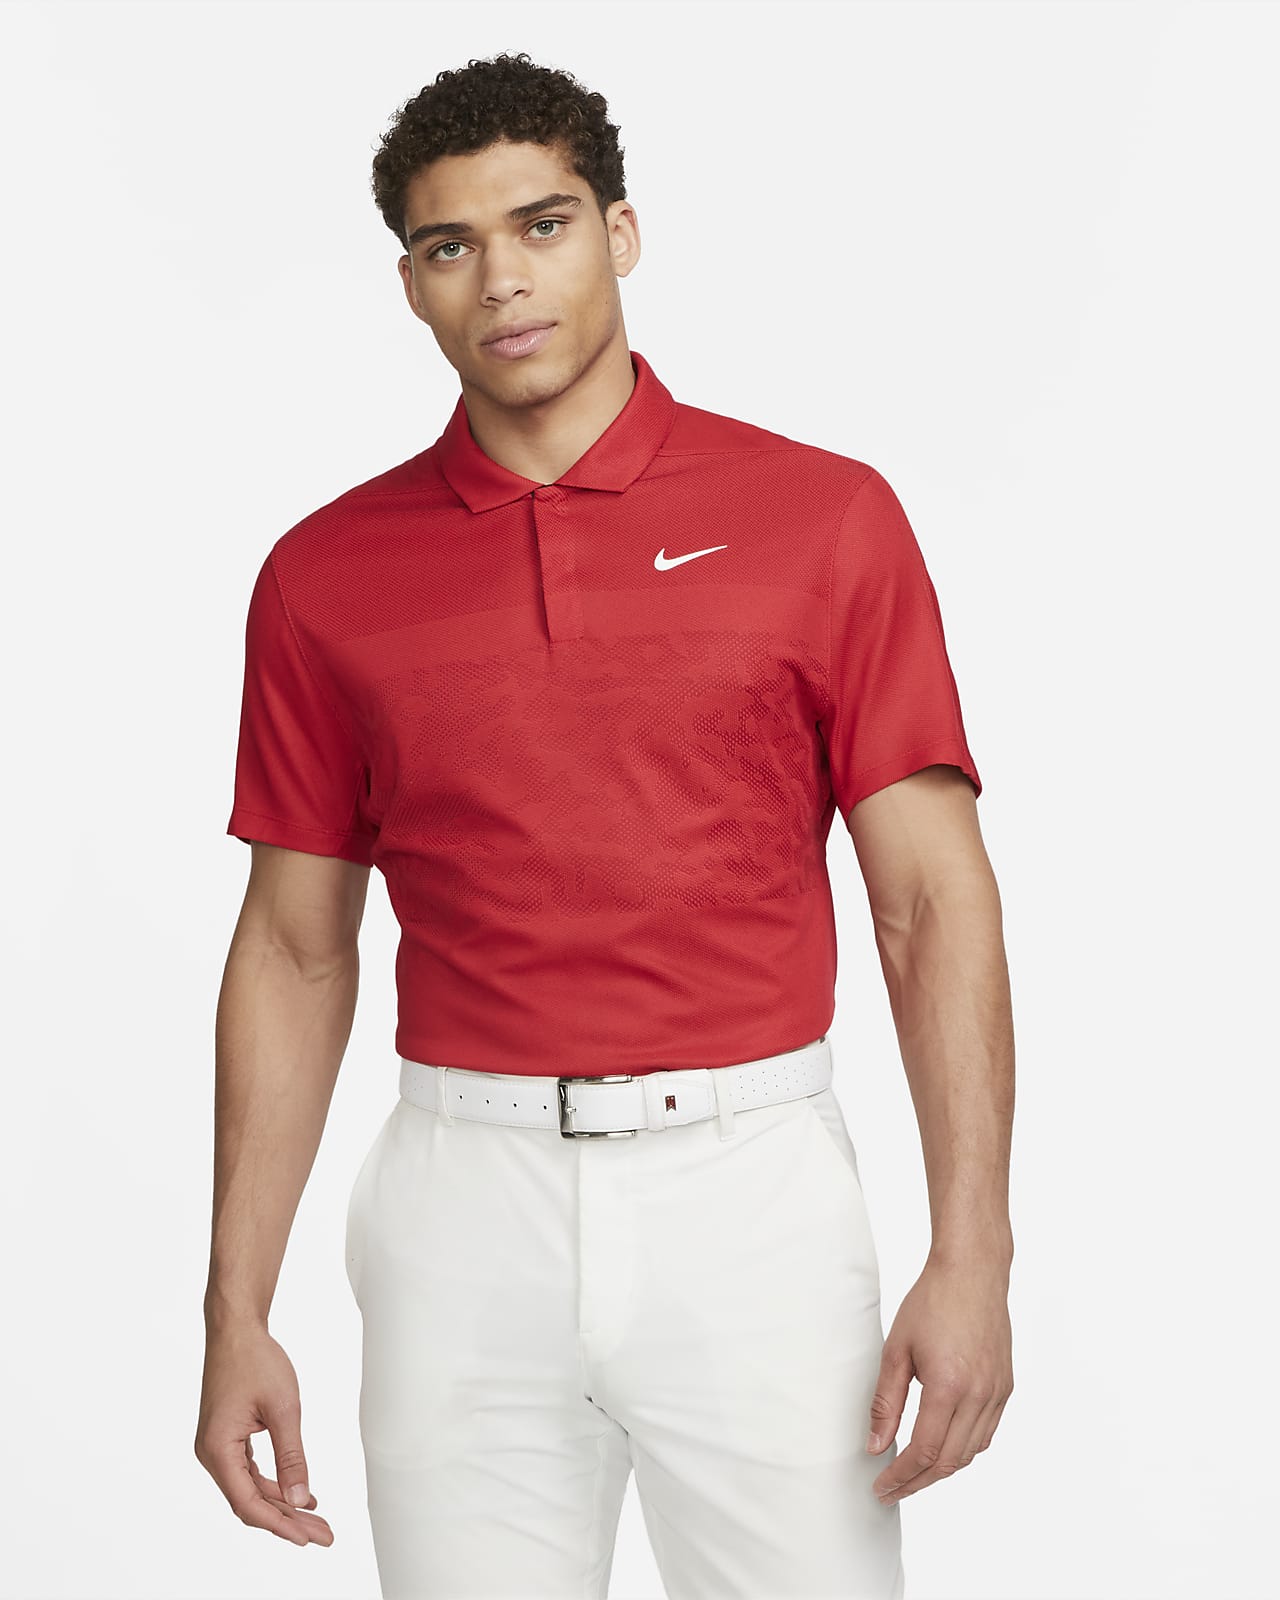 Nike Dri-FIT ADV Tiger Woods Men's Golf 